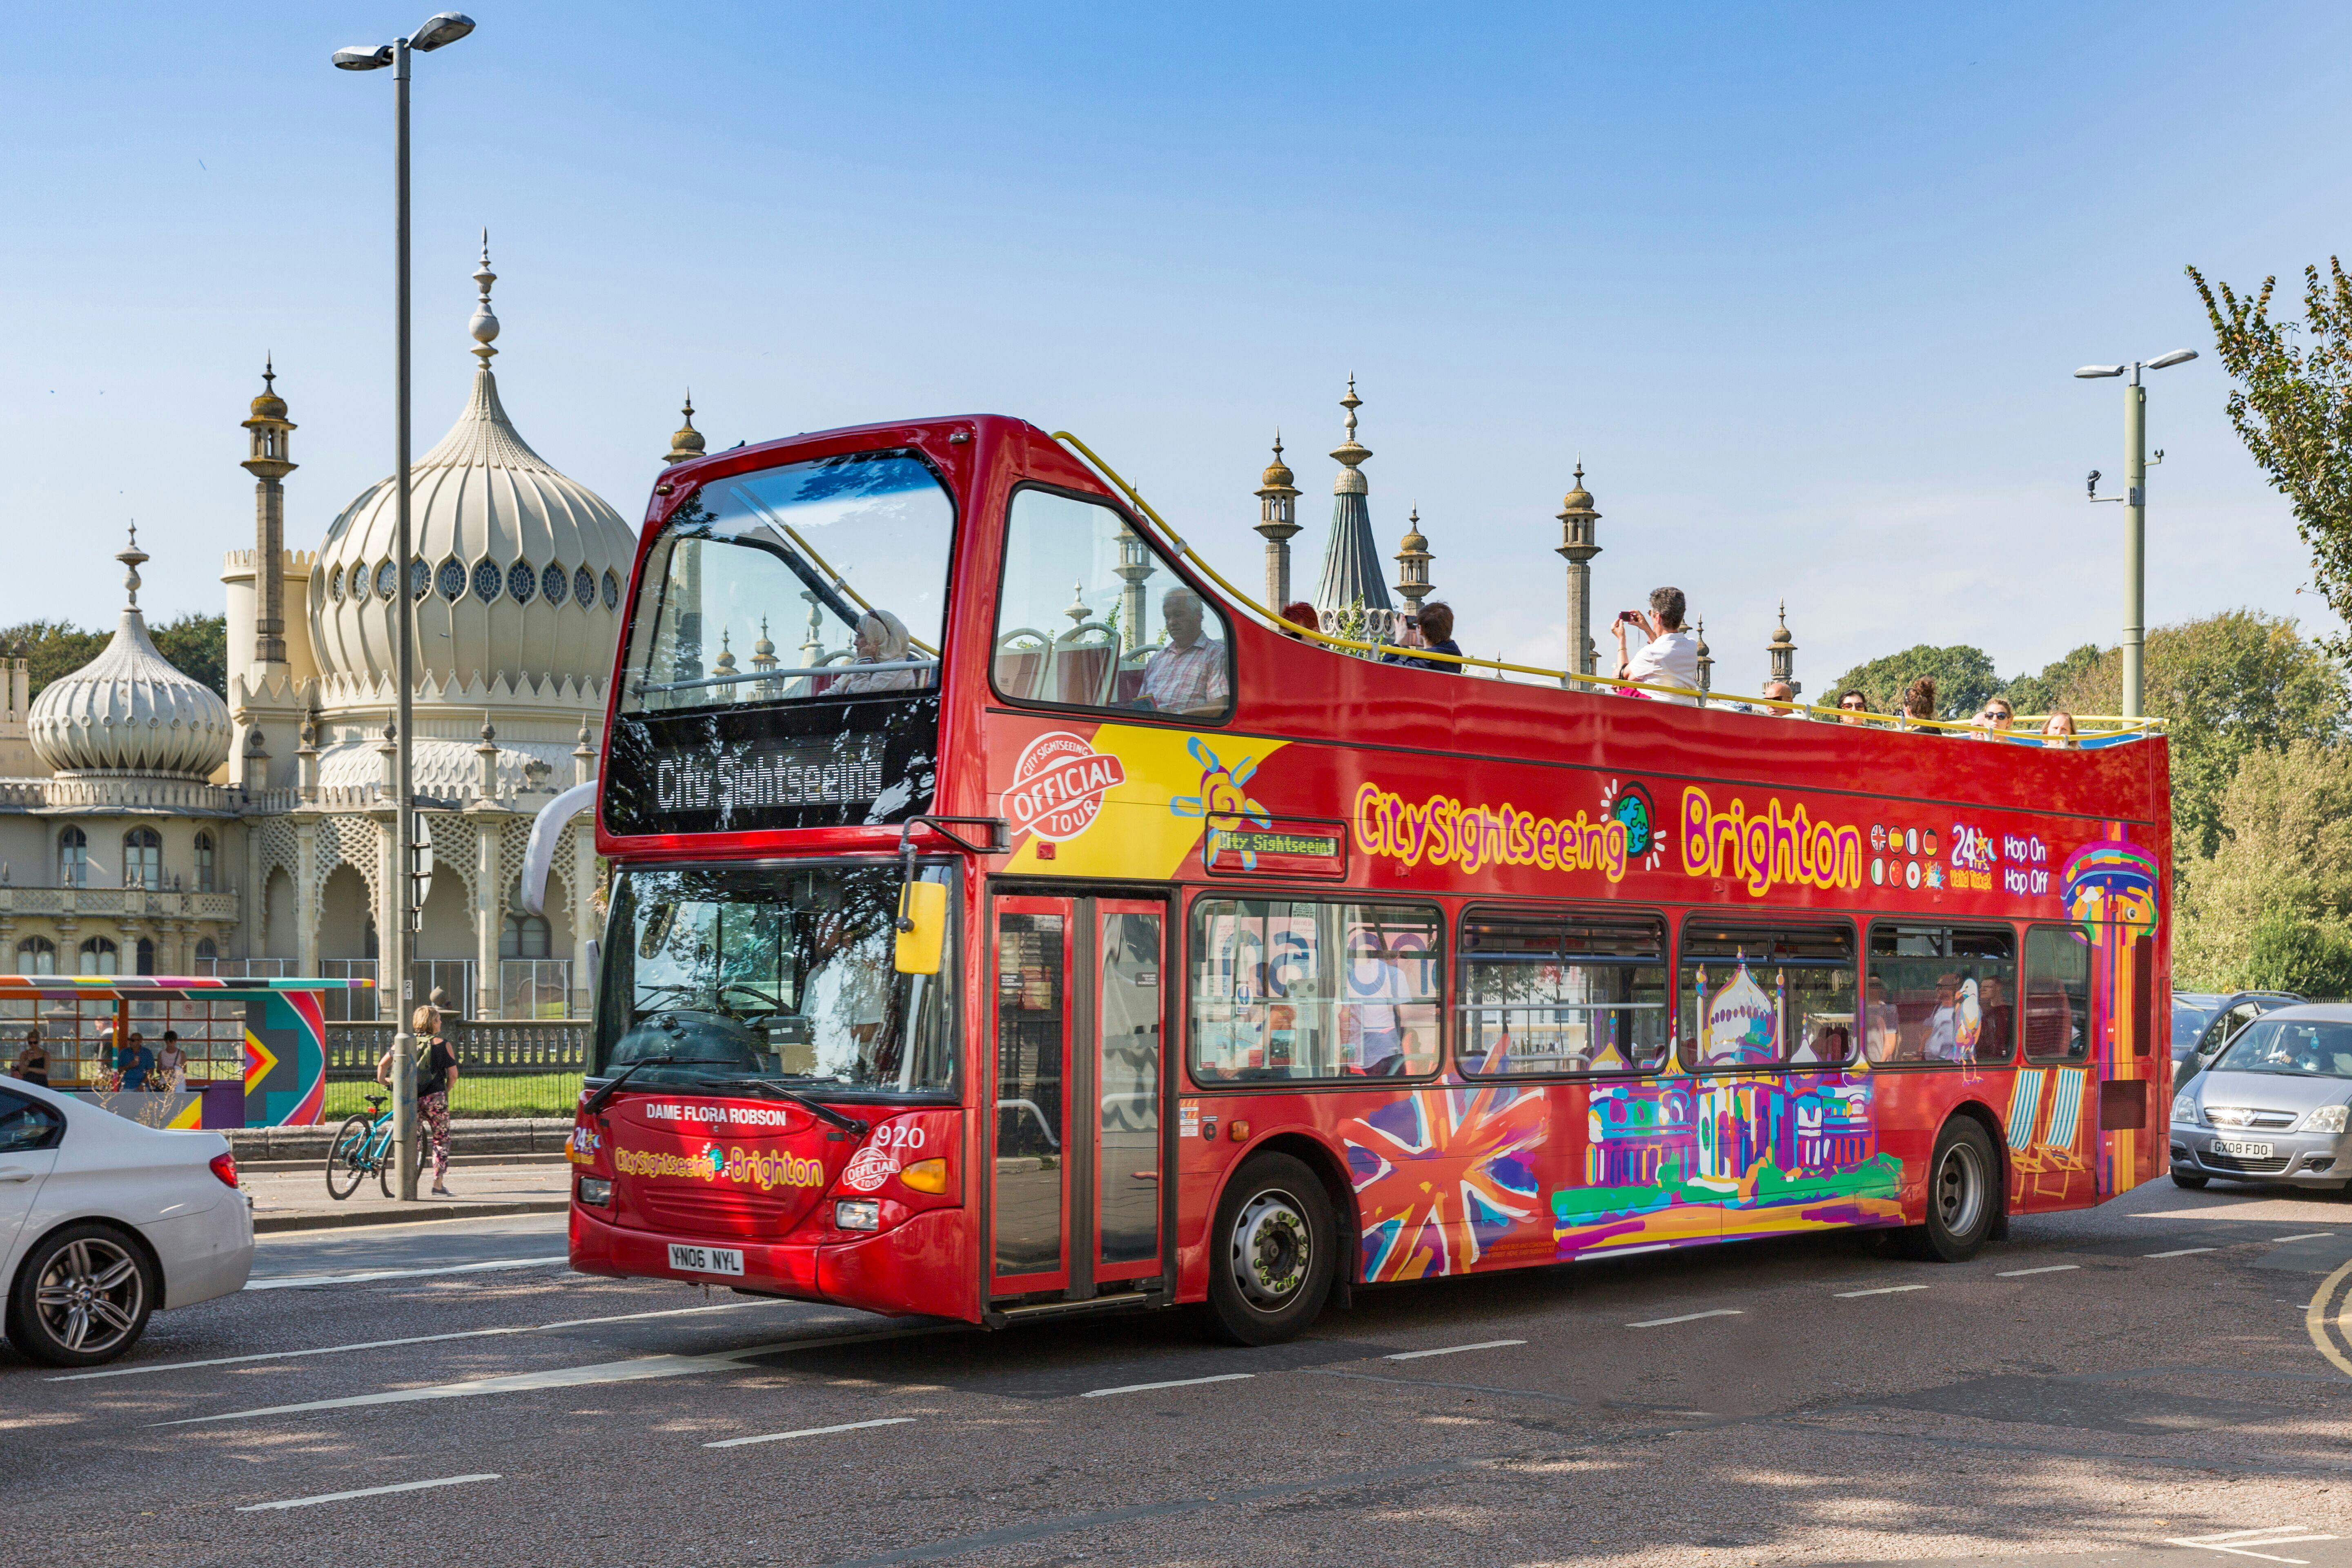 Excursão turística em ônibus hop-on hop-off pela cidade de Brighton